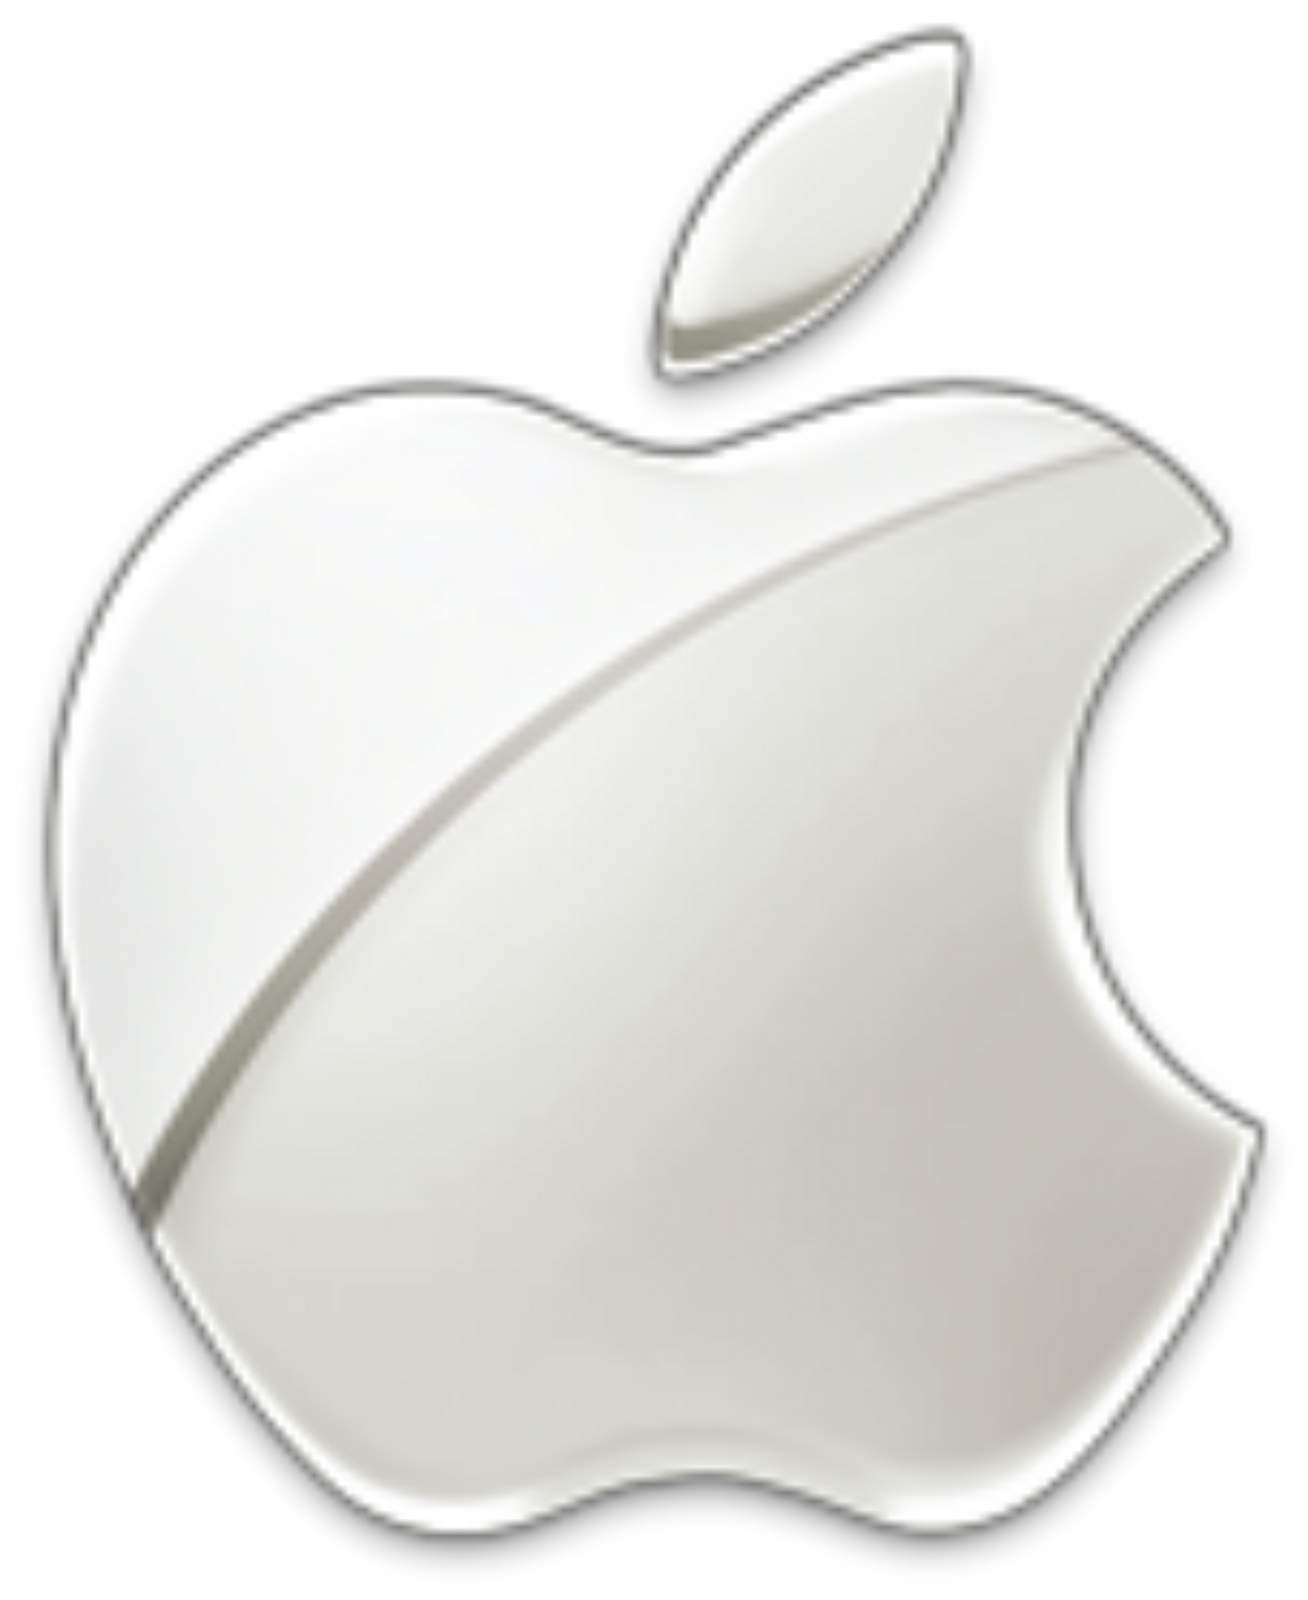 http://4.bp.blogspot.com/-I78P9_Fjlk8/T4vhkzJumRI/AAAAAAAAAi0/dk6SllzWlow/s1600/2000px-Apple-logo.png